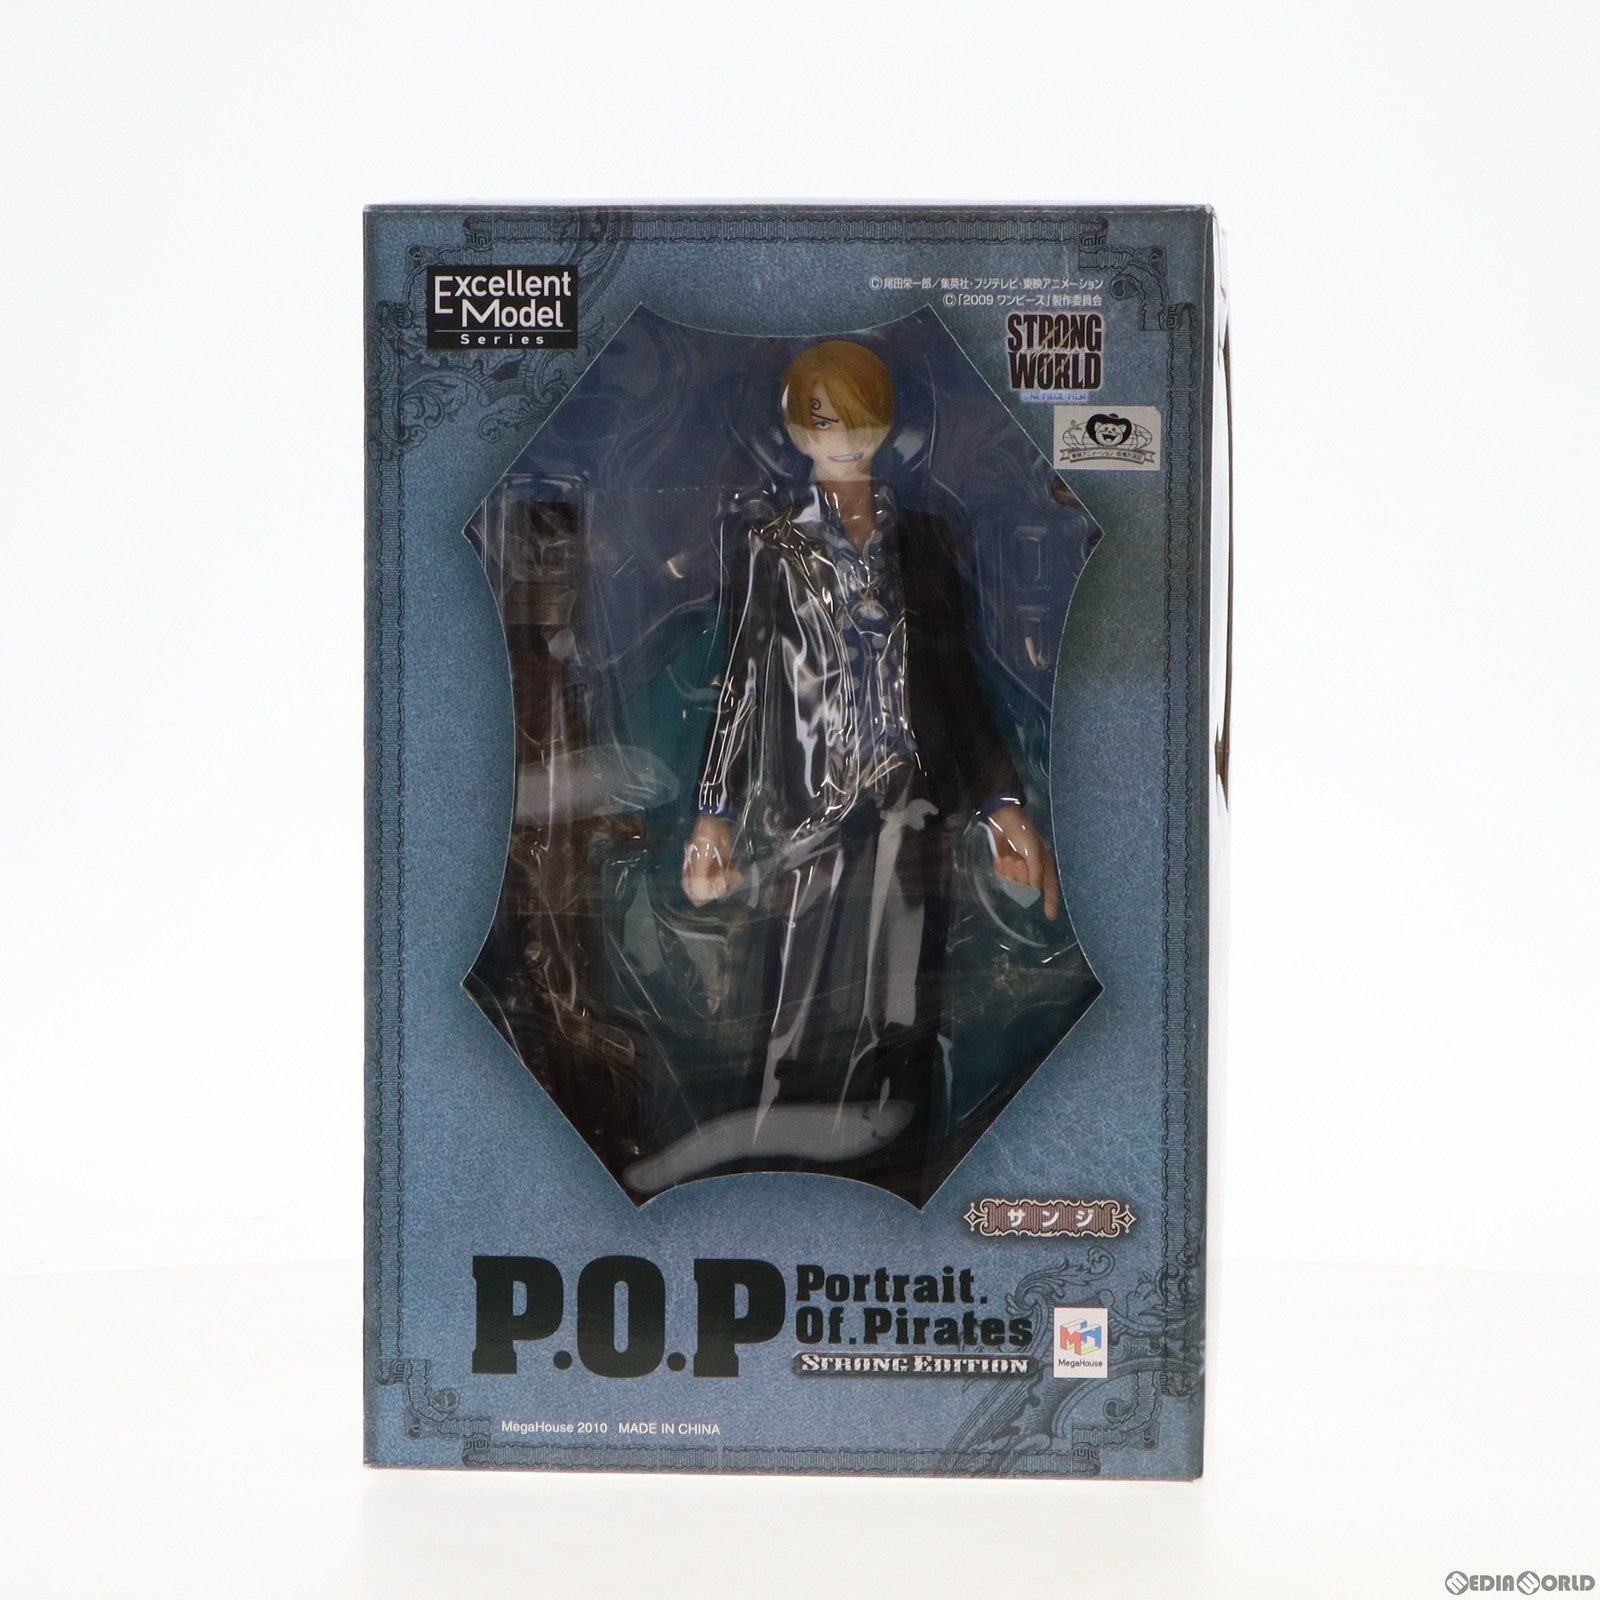 【中古即納】[FIG]Portrait.Of.Pirates P.O.P STRONG EDITION サンジ ONE PIECE(ワンピース) 1/8 完成品 フィギュア メガハウス(20100730)